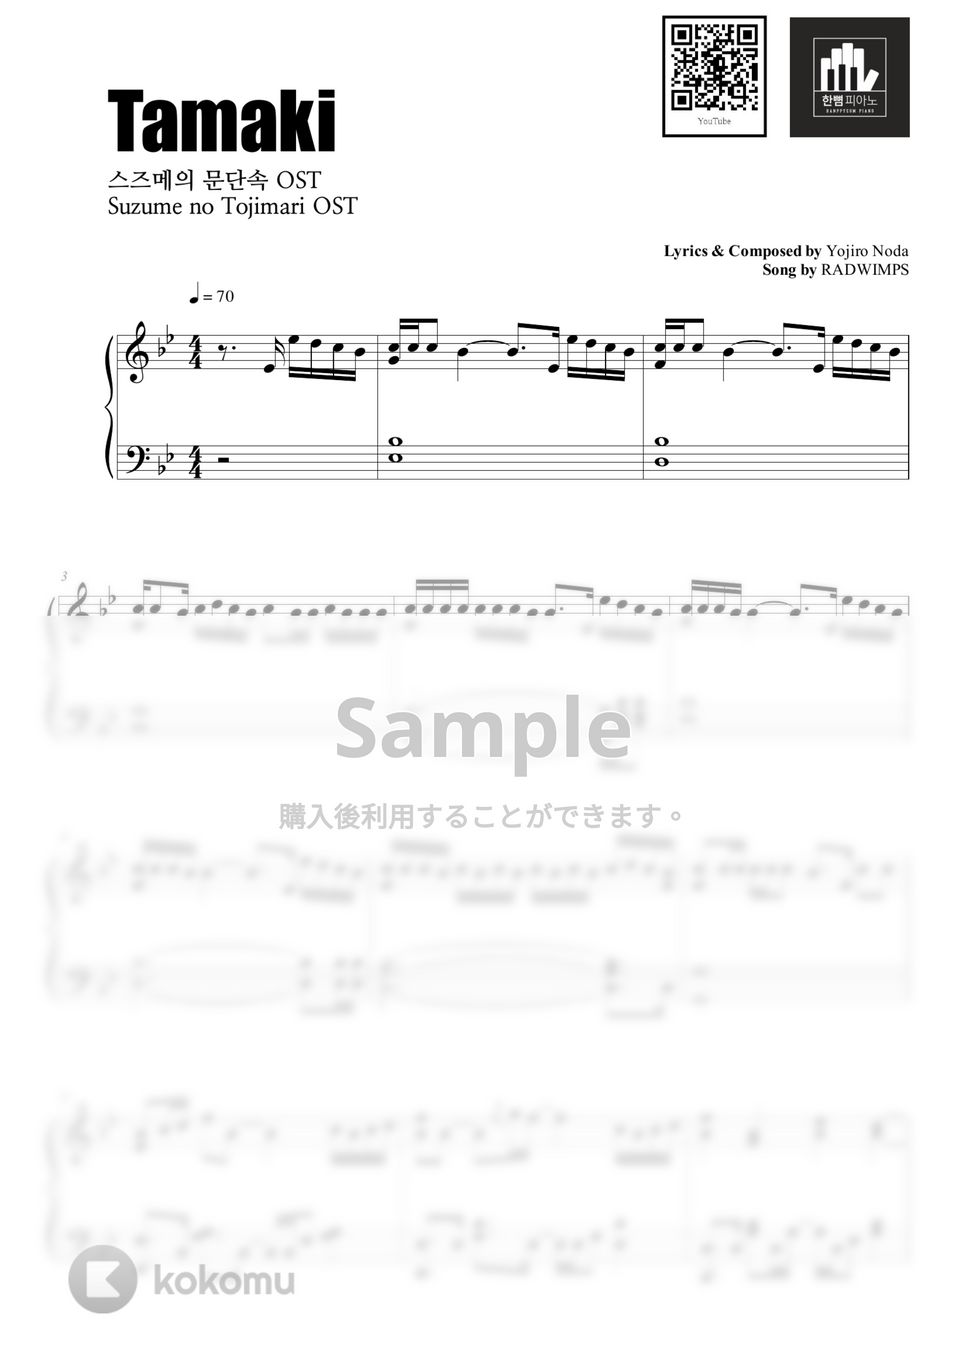 RADWIMPS - Tamaki (PIANO COVER) by HANPPYEOMPIANO